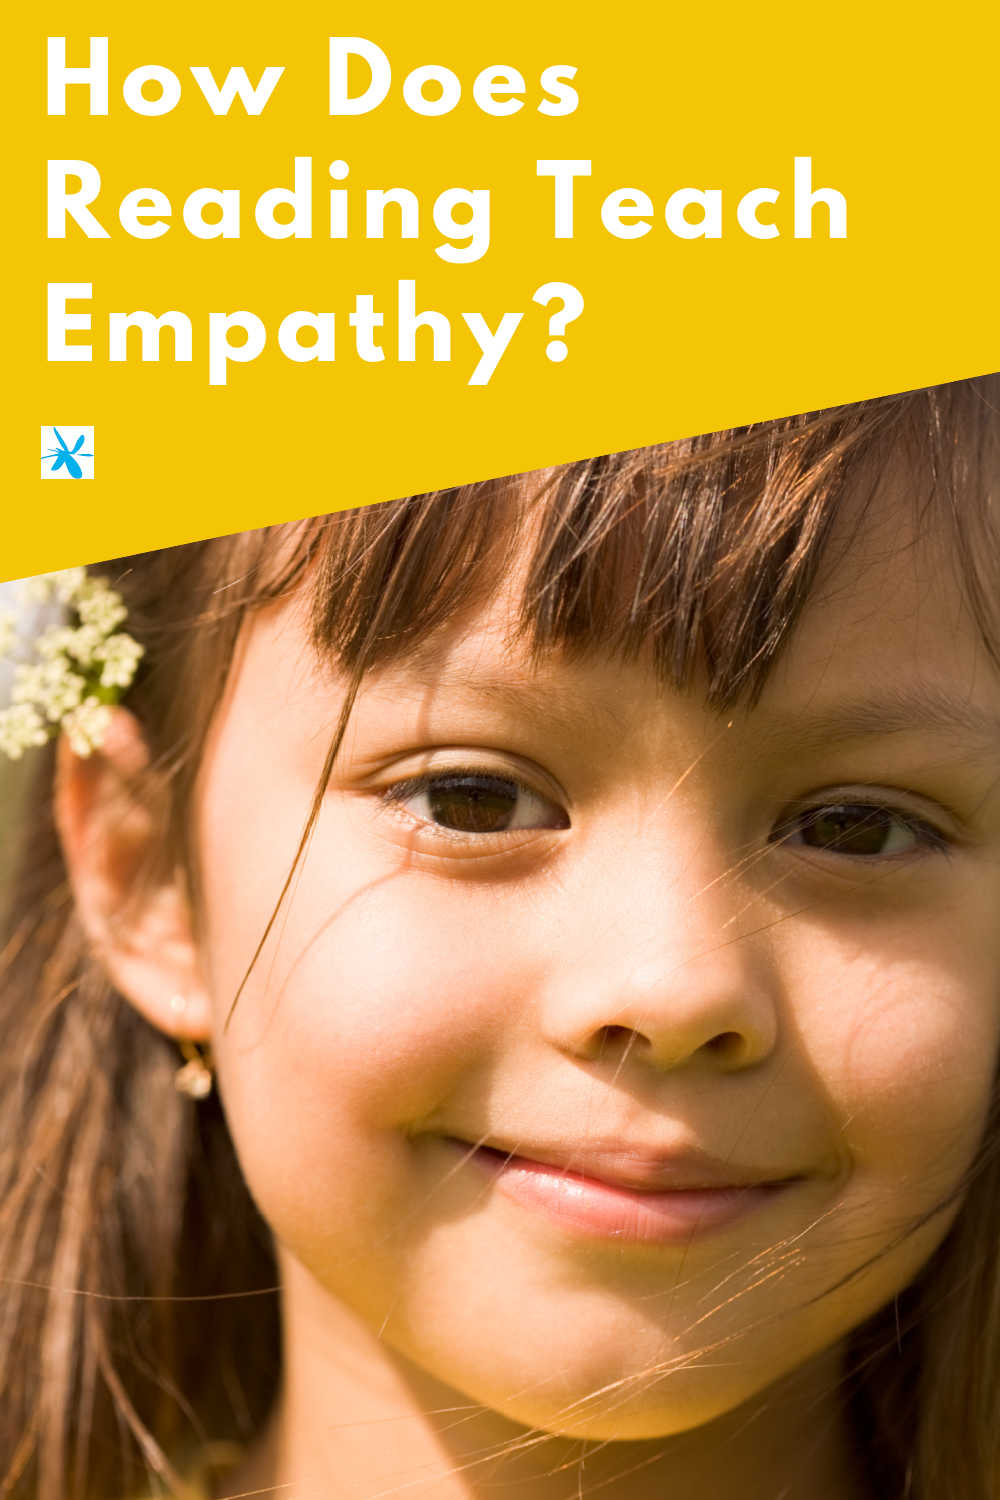 How Does Reading Teach Empathy?